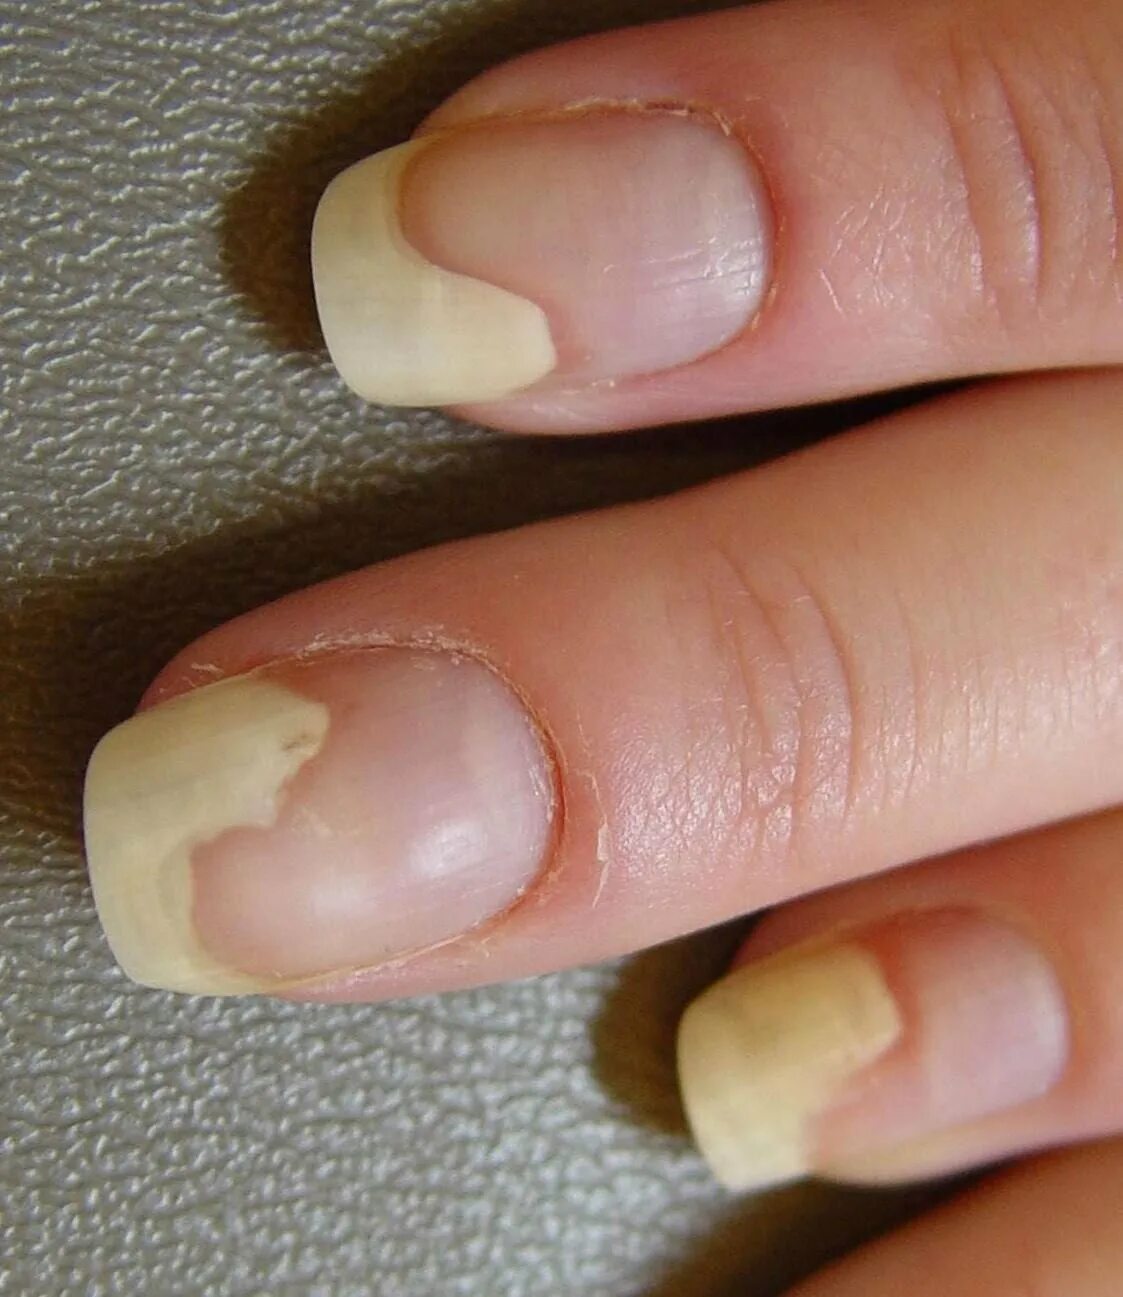 Ониходистрофия - онихолизис.. Онихолизис ногтей онихолизис. Почему гель отслаивается на кончиках